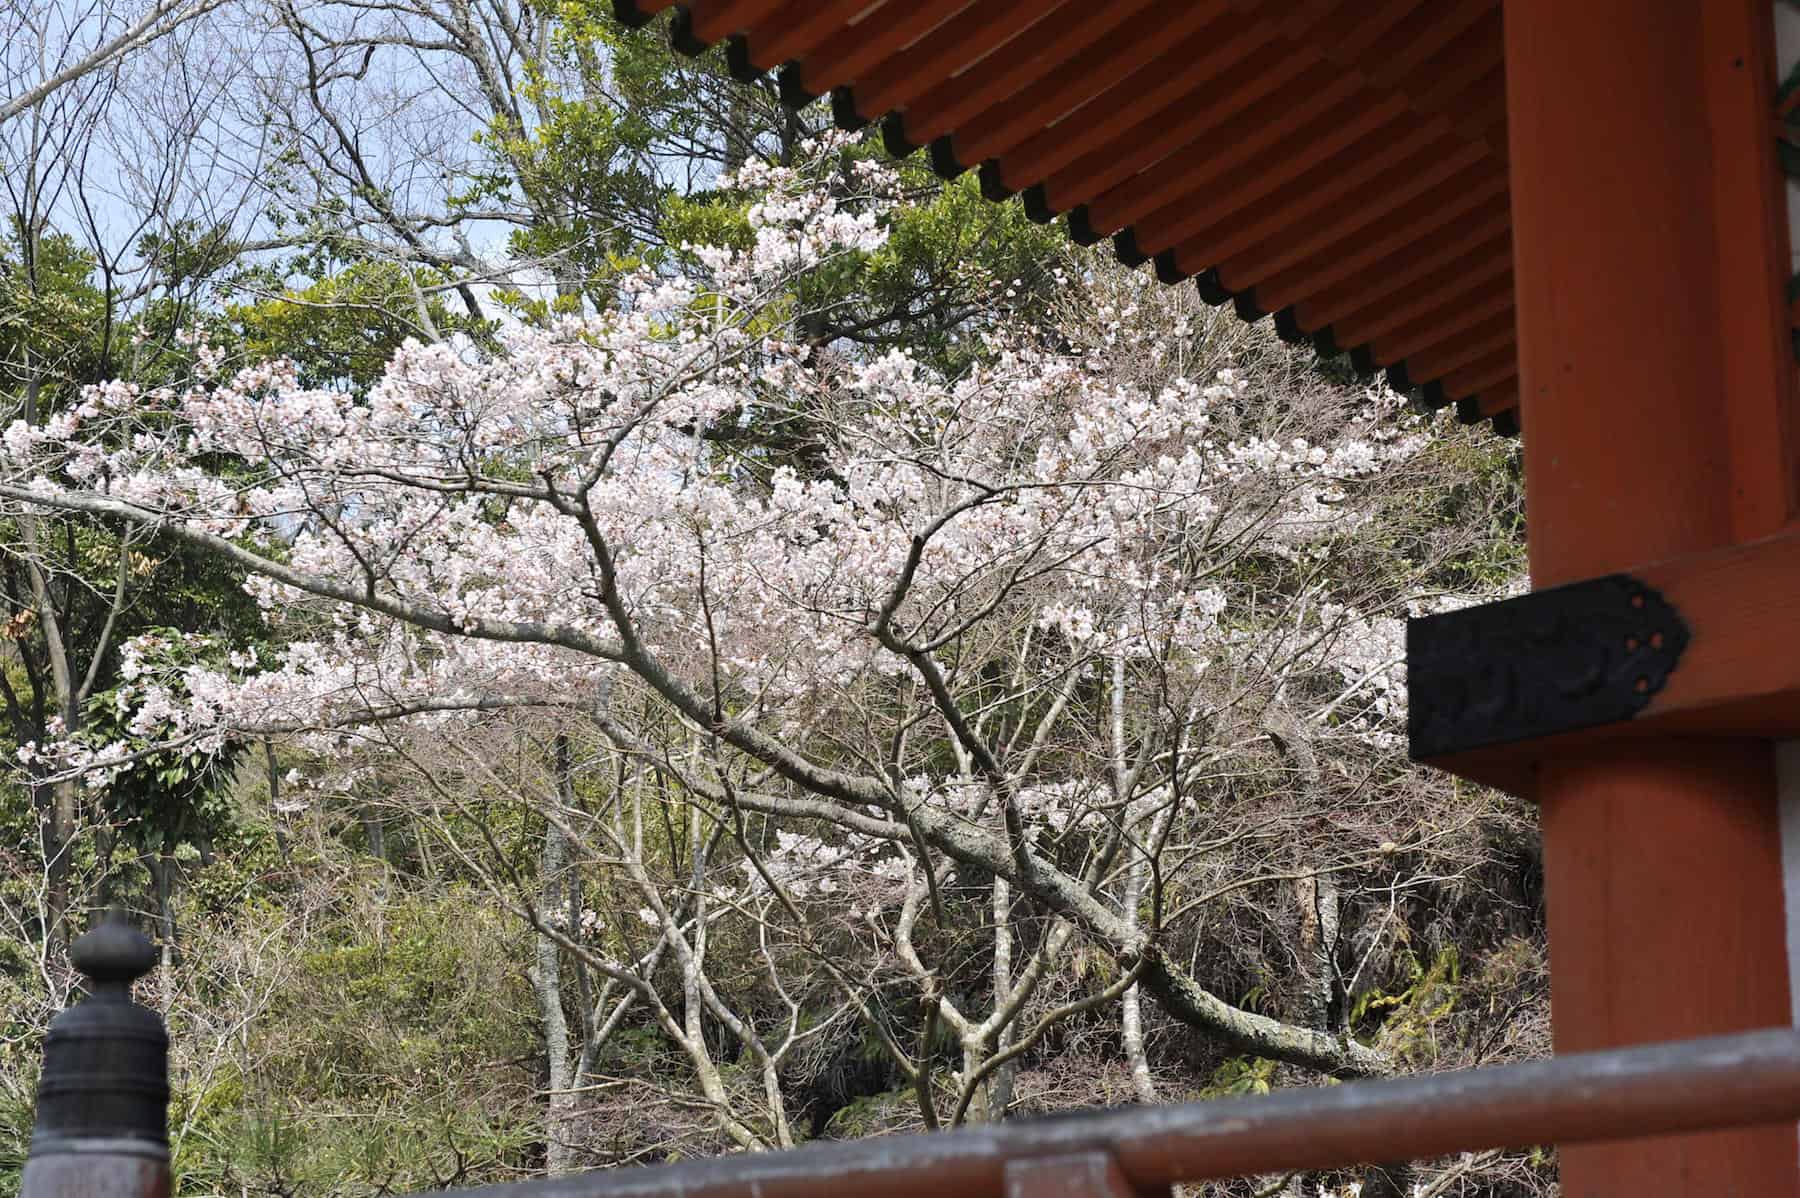 Cherry blossom at Mitaki Temple